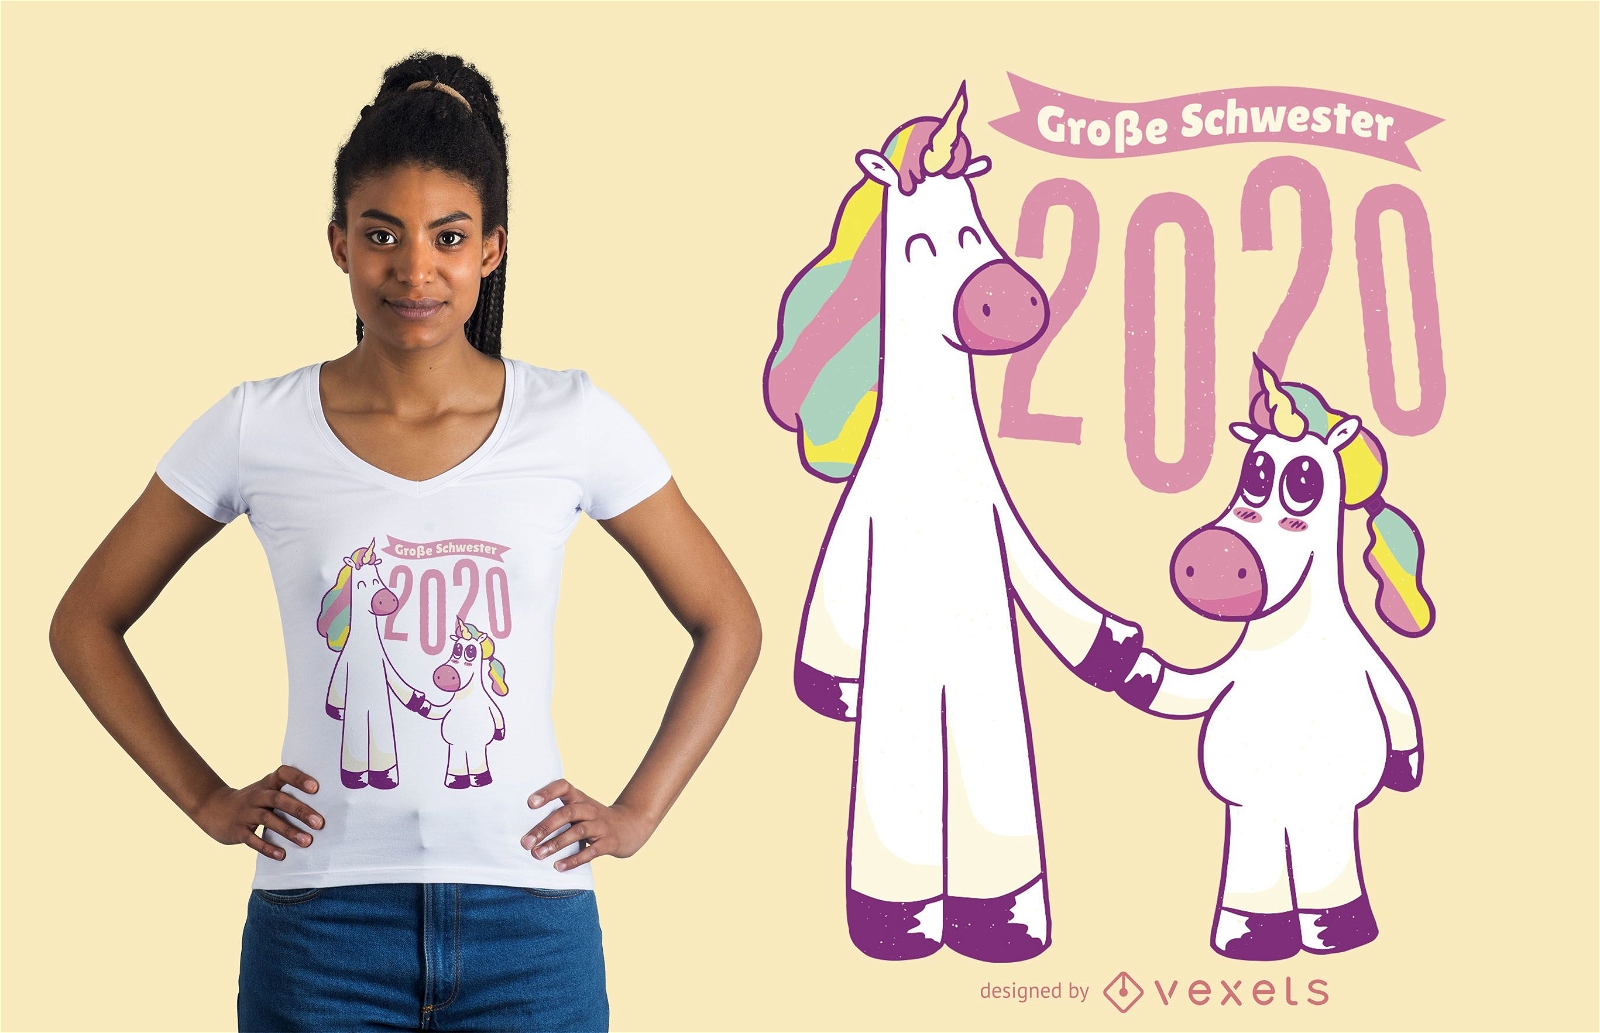 Einhorn Schwestern 2020 T-Shirt Design